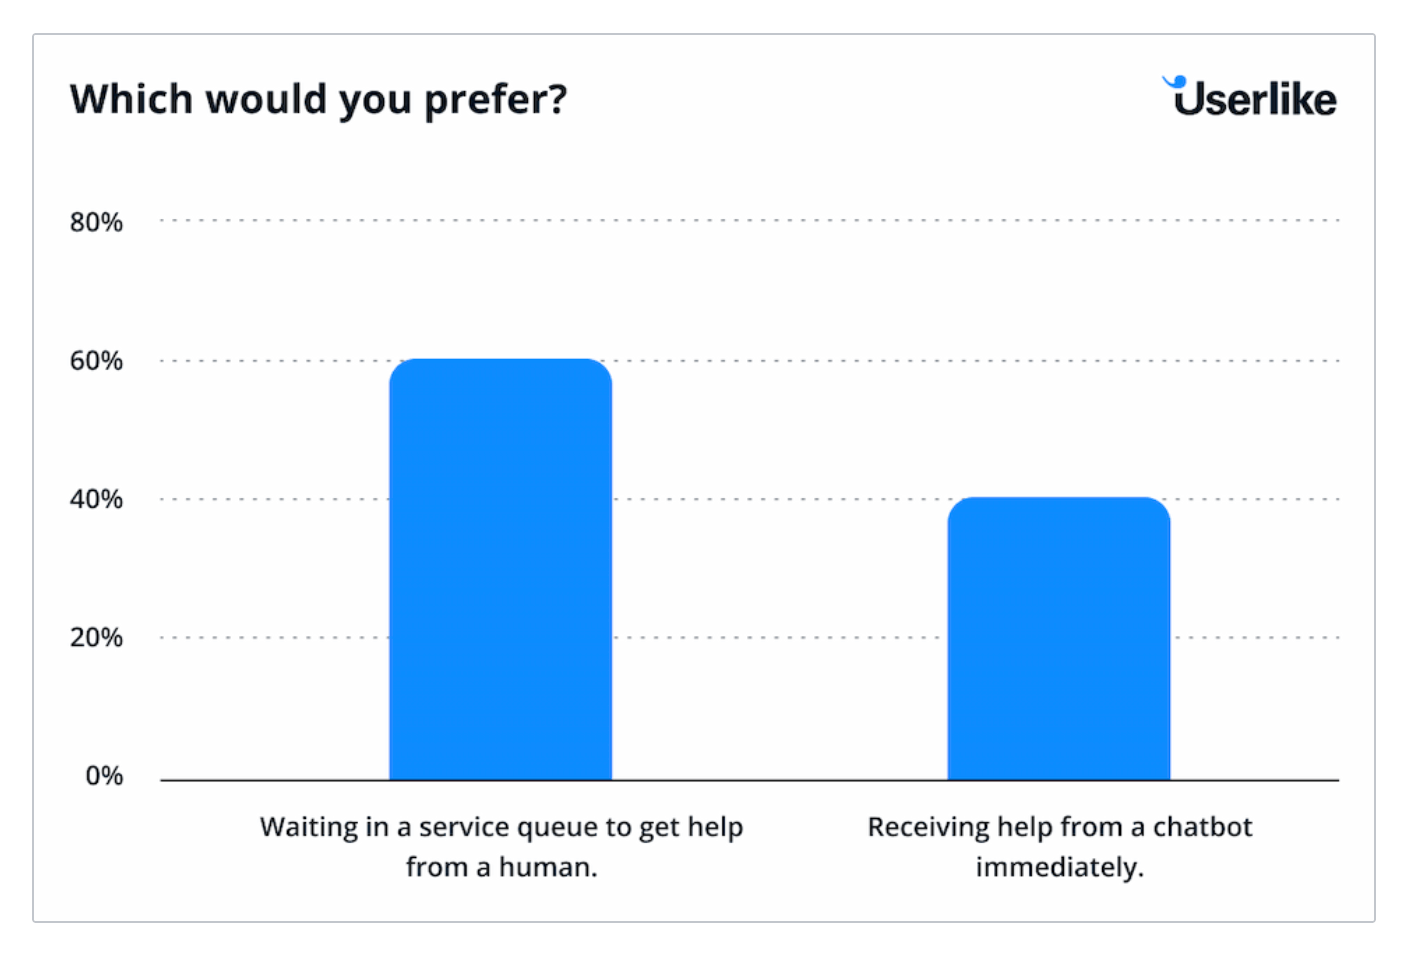 Userlike survey on customer service preferences